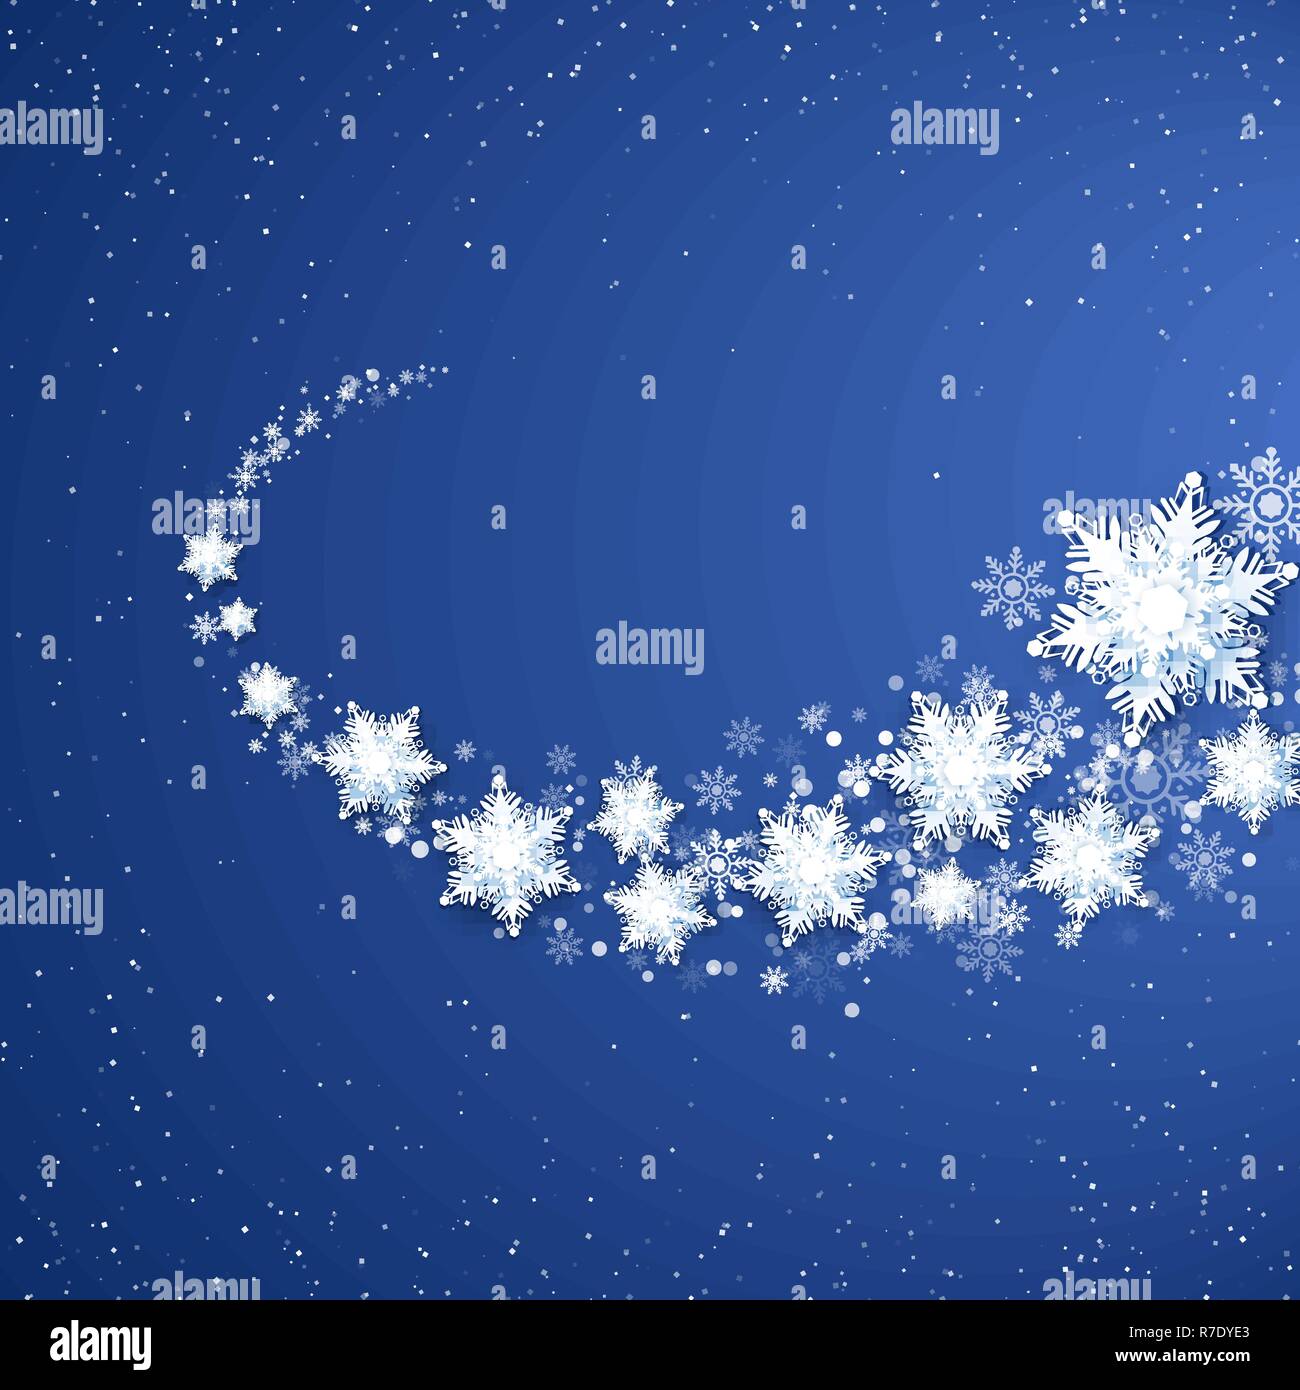 Weiß Snowflekes Trail. Auf blauem Hintergrund Schneefall. Schneesturm Muster. Vector Illustration Stock Vektor